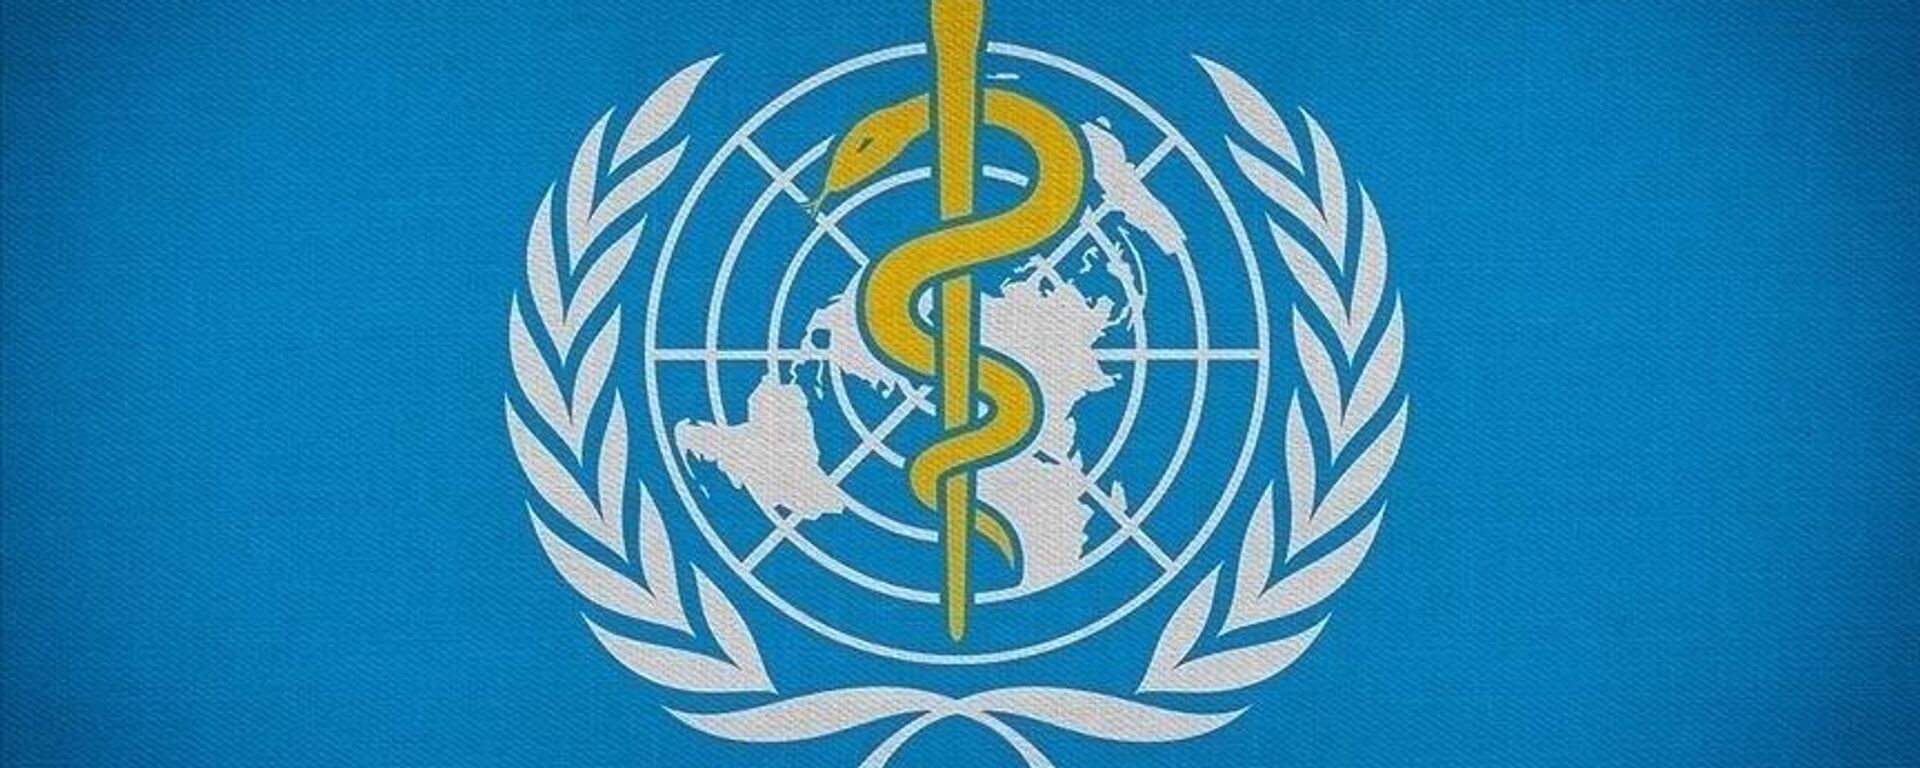 Dünya Sağlık Örgütü (Dsö) Nedir? Dsö Görevleri Nelerdir, Üye Ülkeler Kimlerdir?